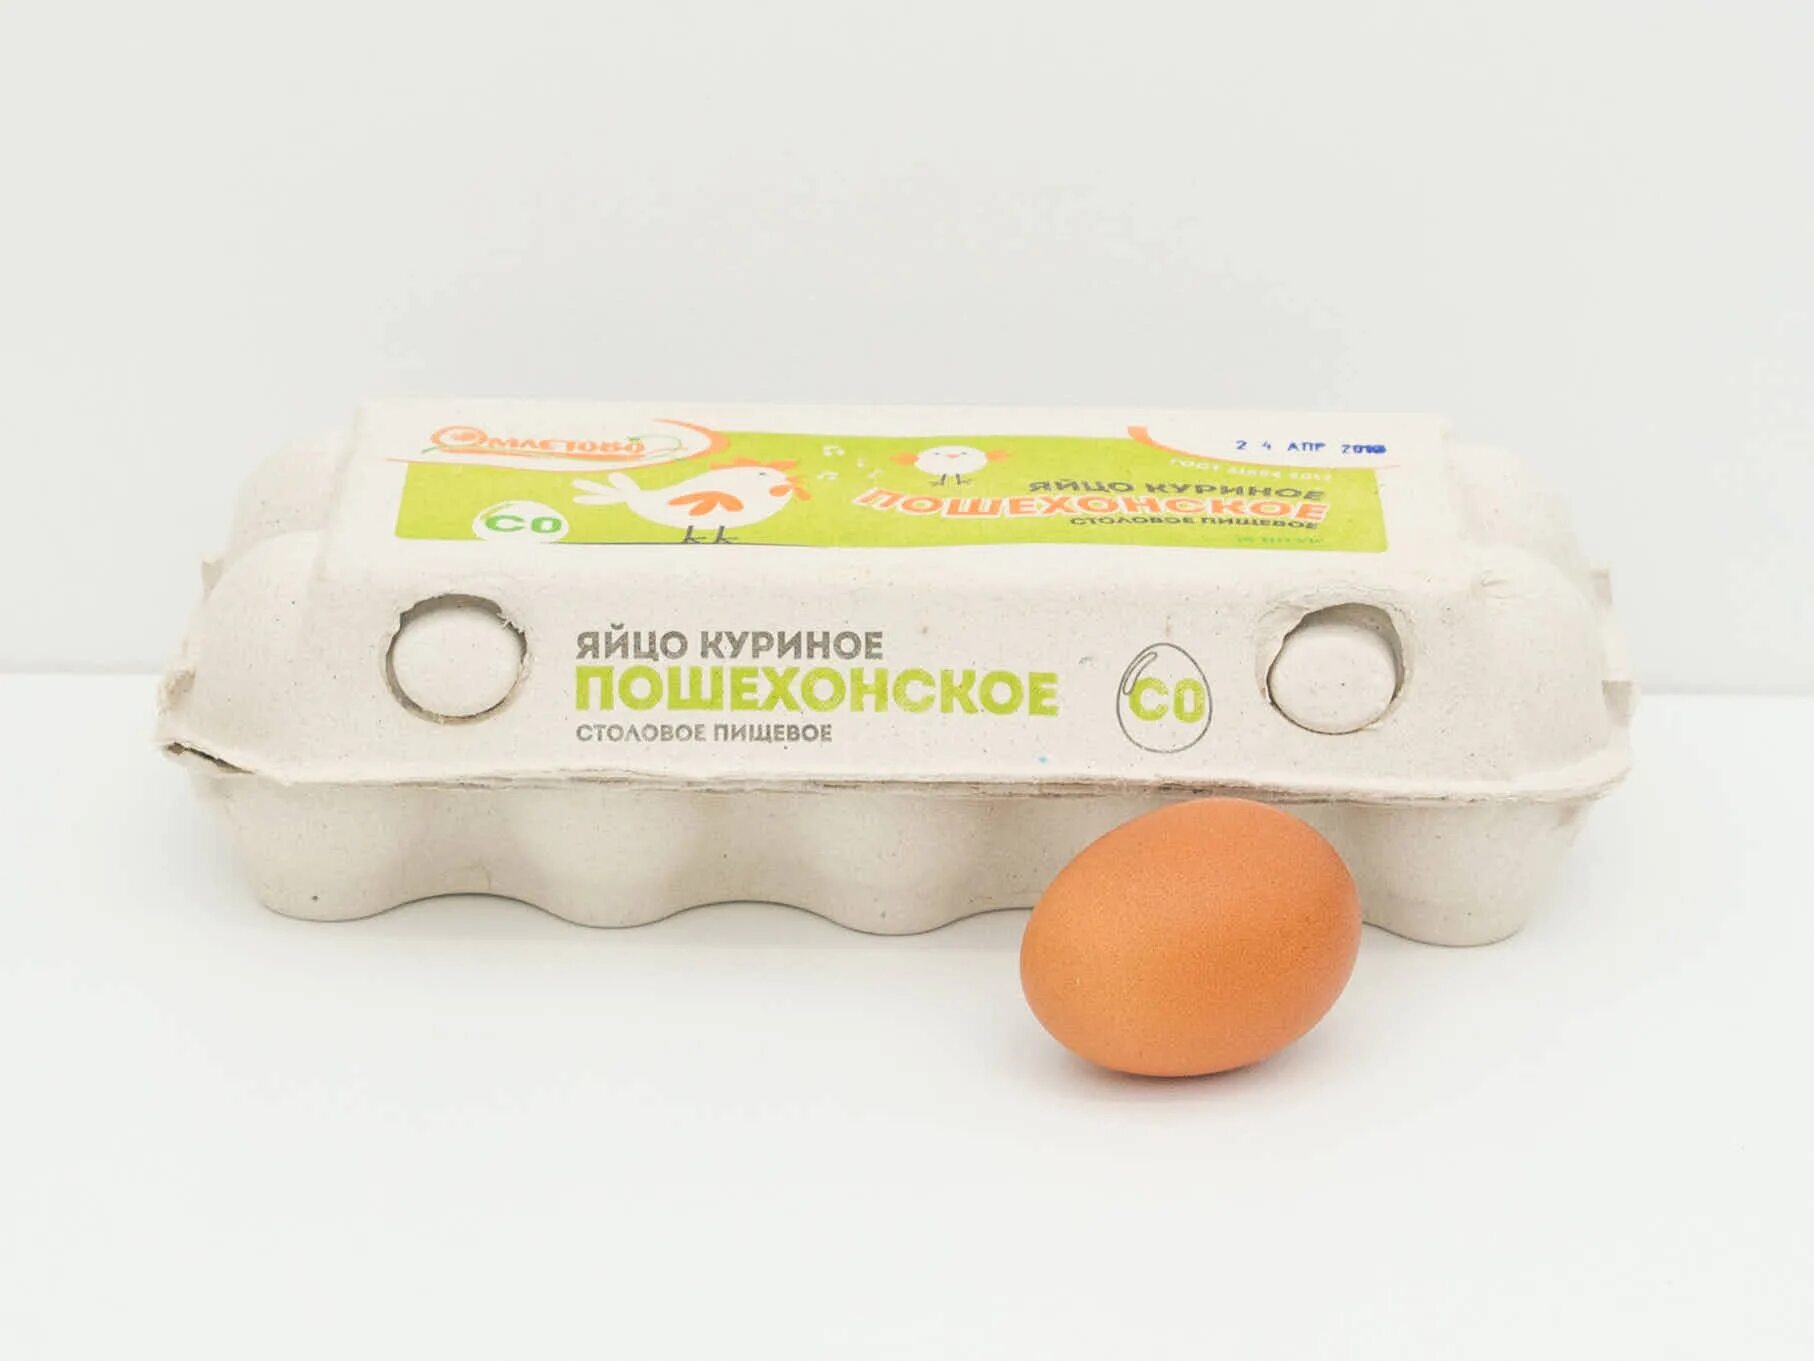 Яйцо куриное термо 10 шт. Яйцо куриное с0. Яйцо 10шт куриное со в упаковке. Яйцо куриное (10 штук). Яйца с0 или с2